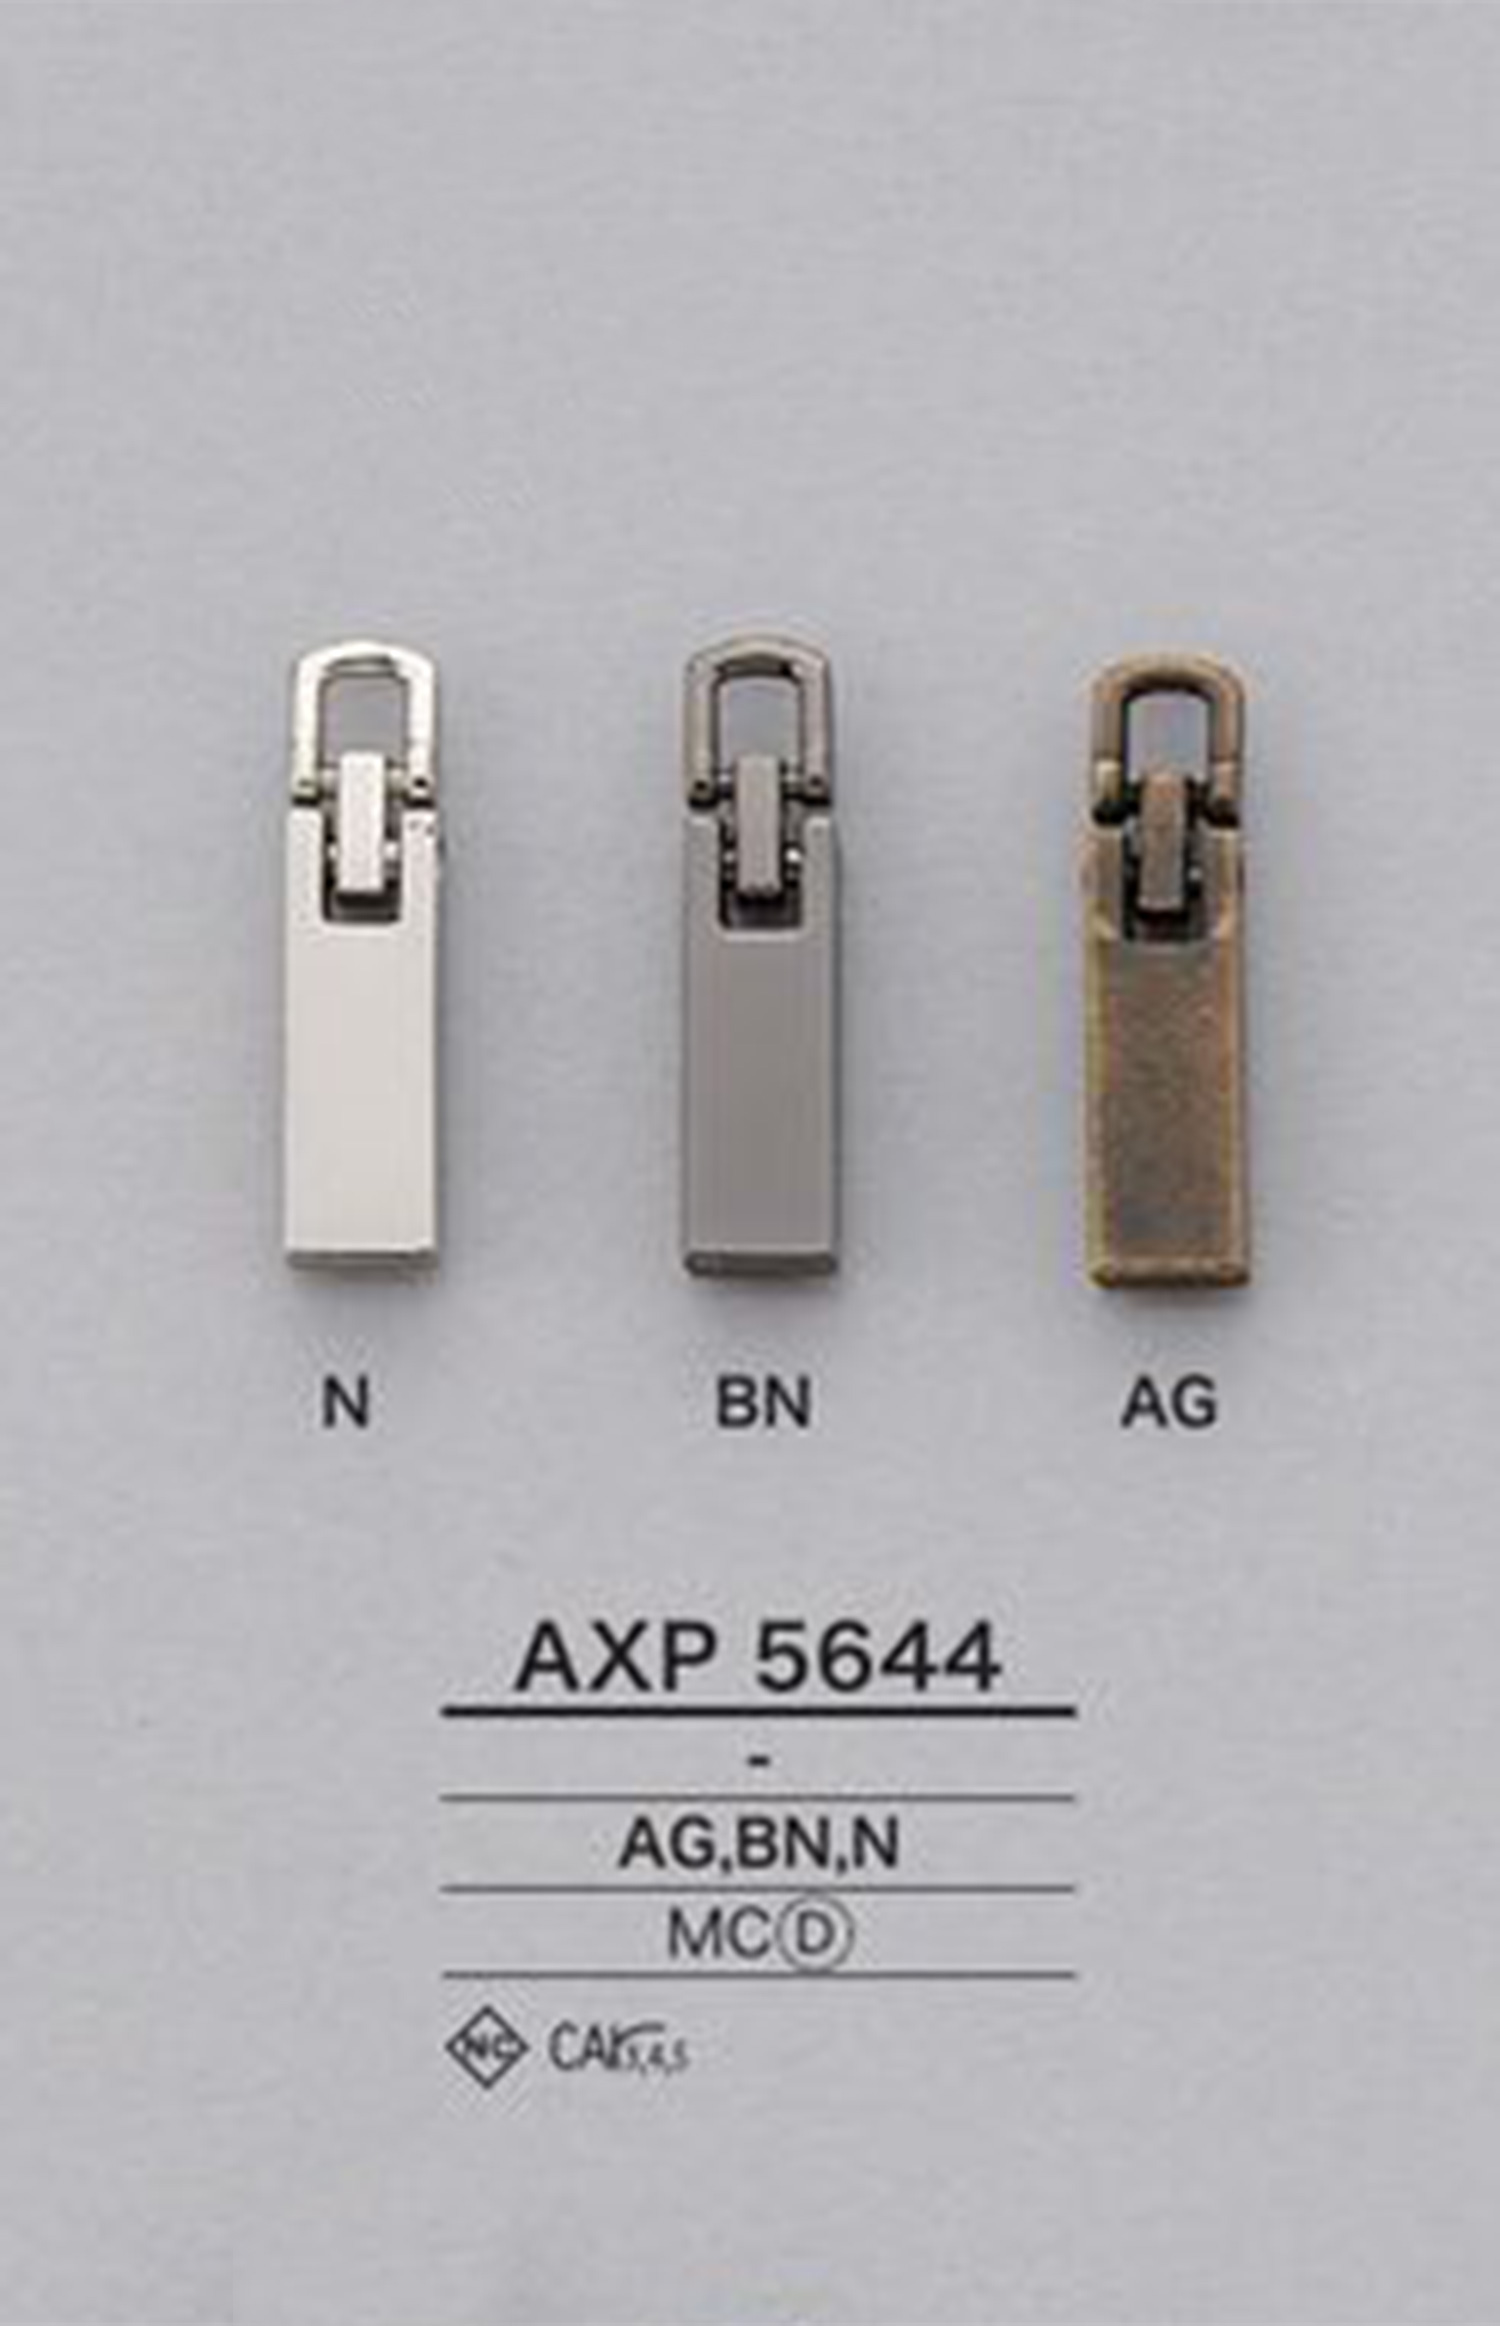 AXP5644 지퍼 포인트(지퍼 슬라이더) IRIS